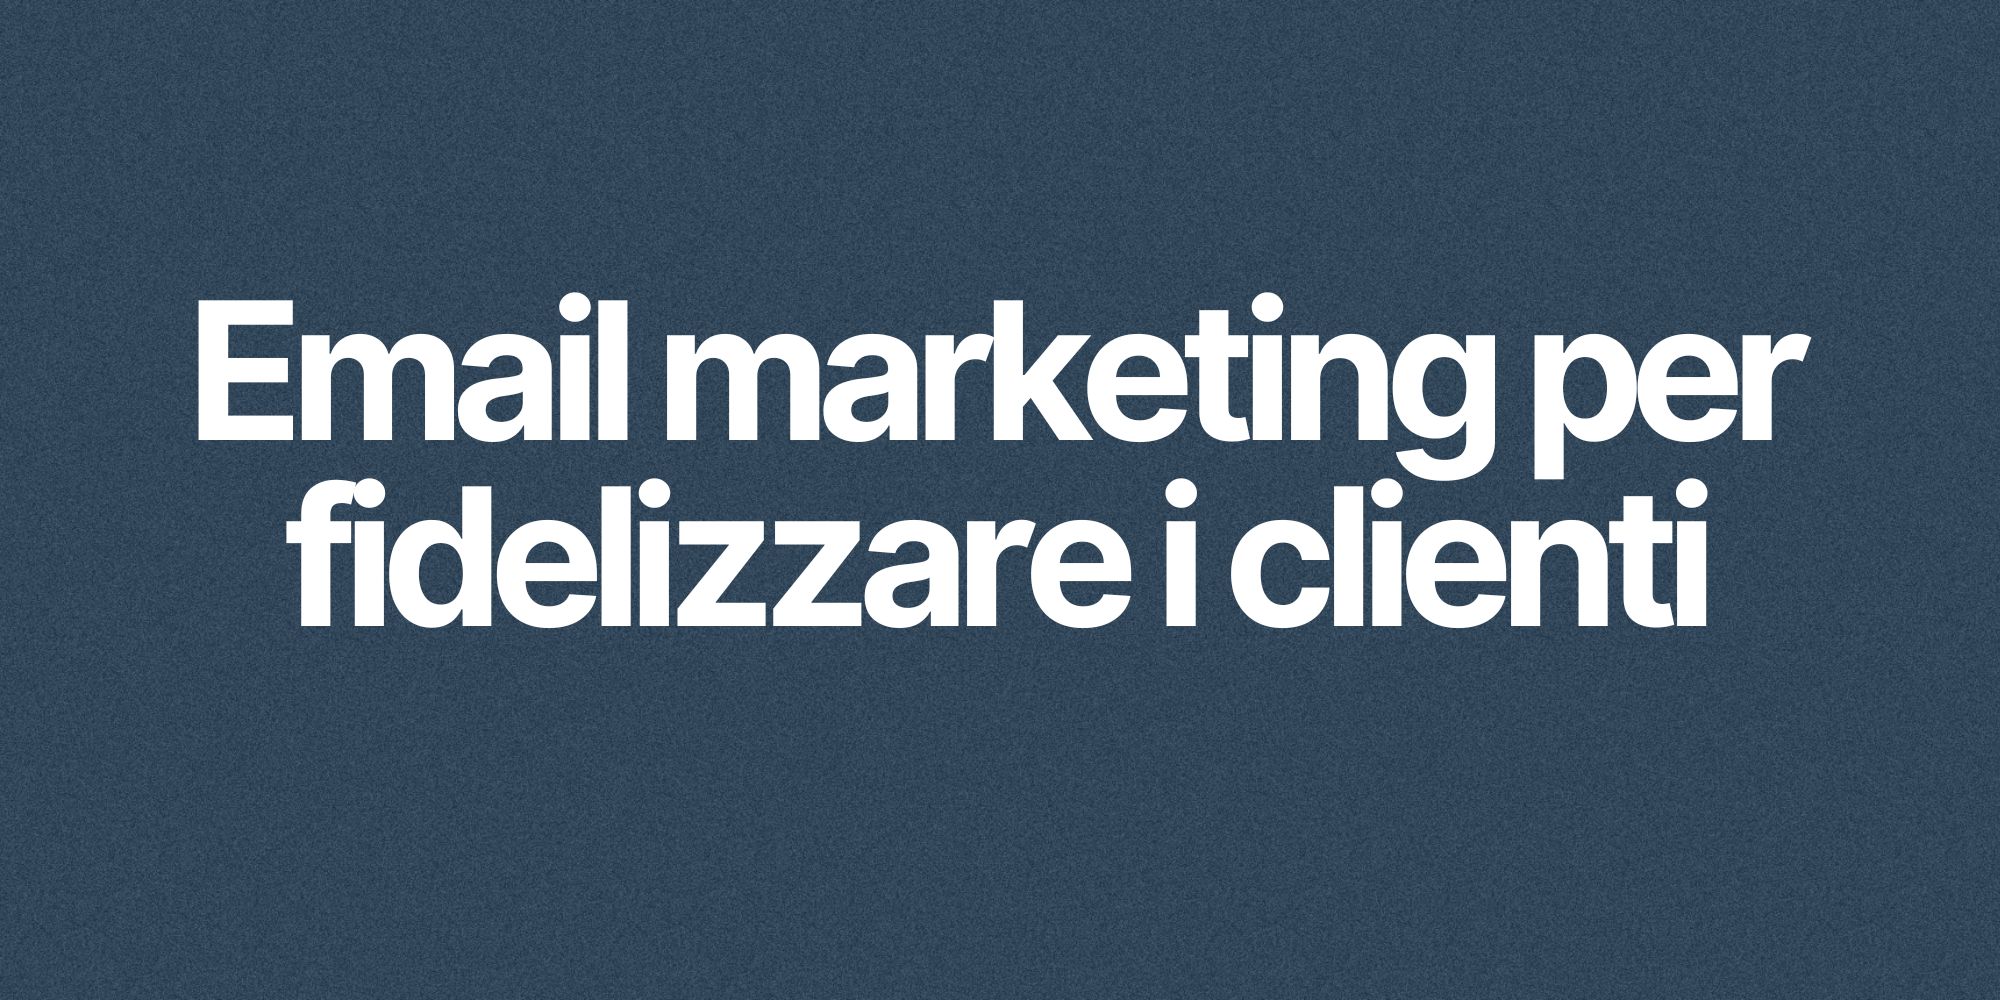 Email marketing per fidelizzare i clienti